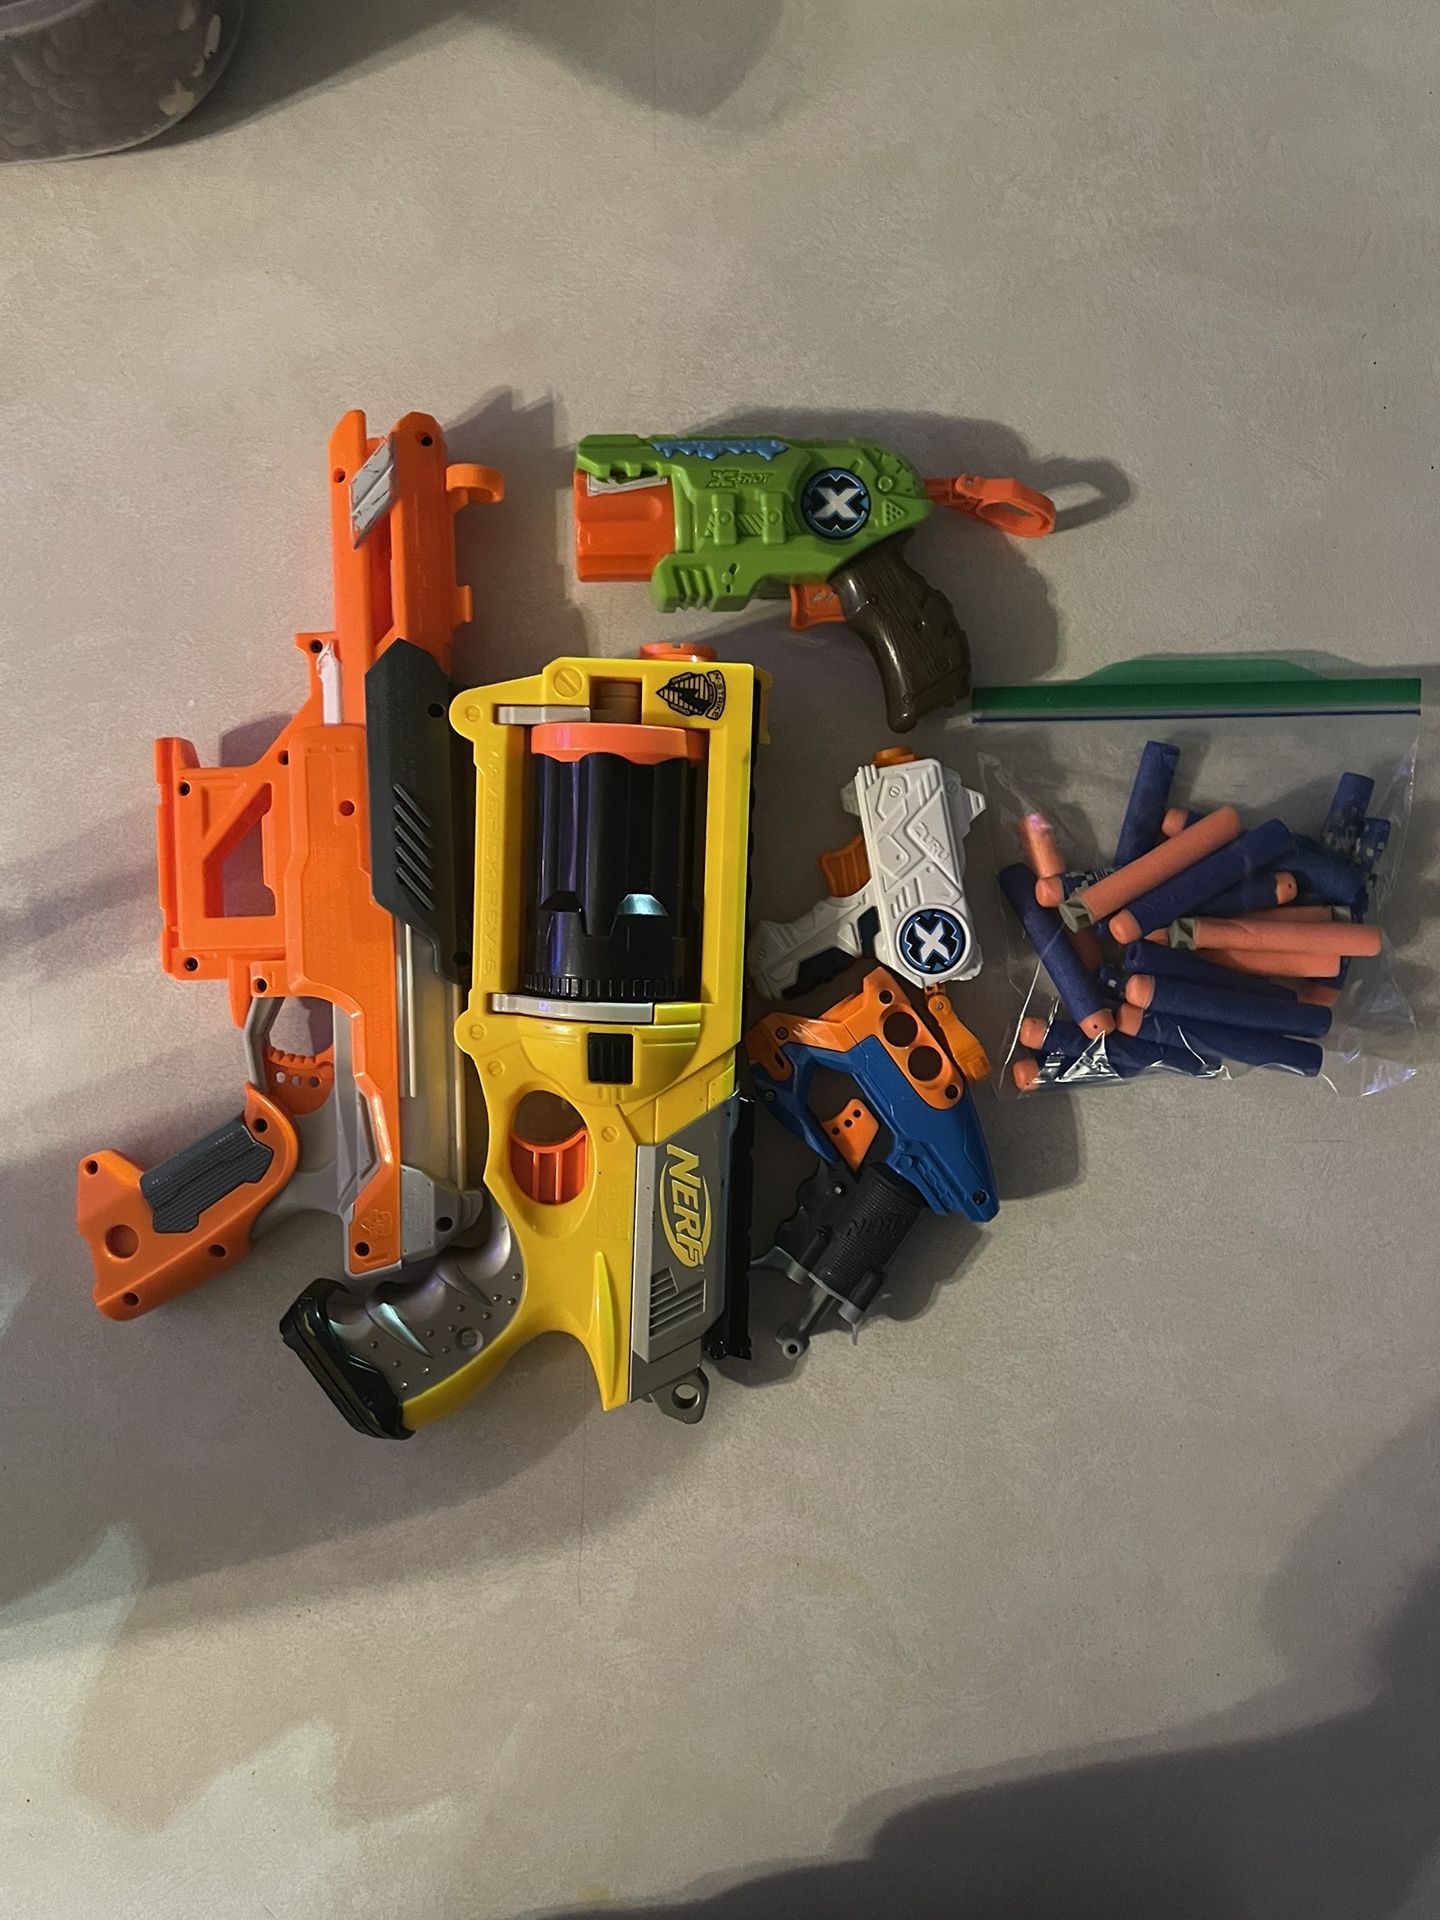 Nerf Guns / Pistolas de juguete